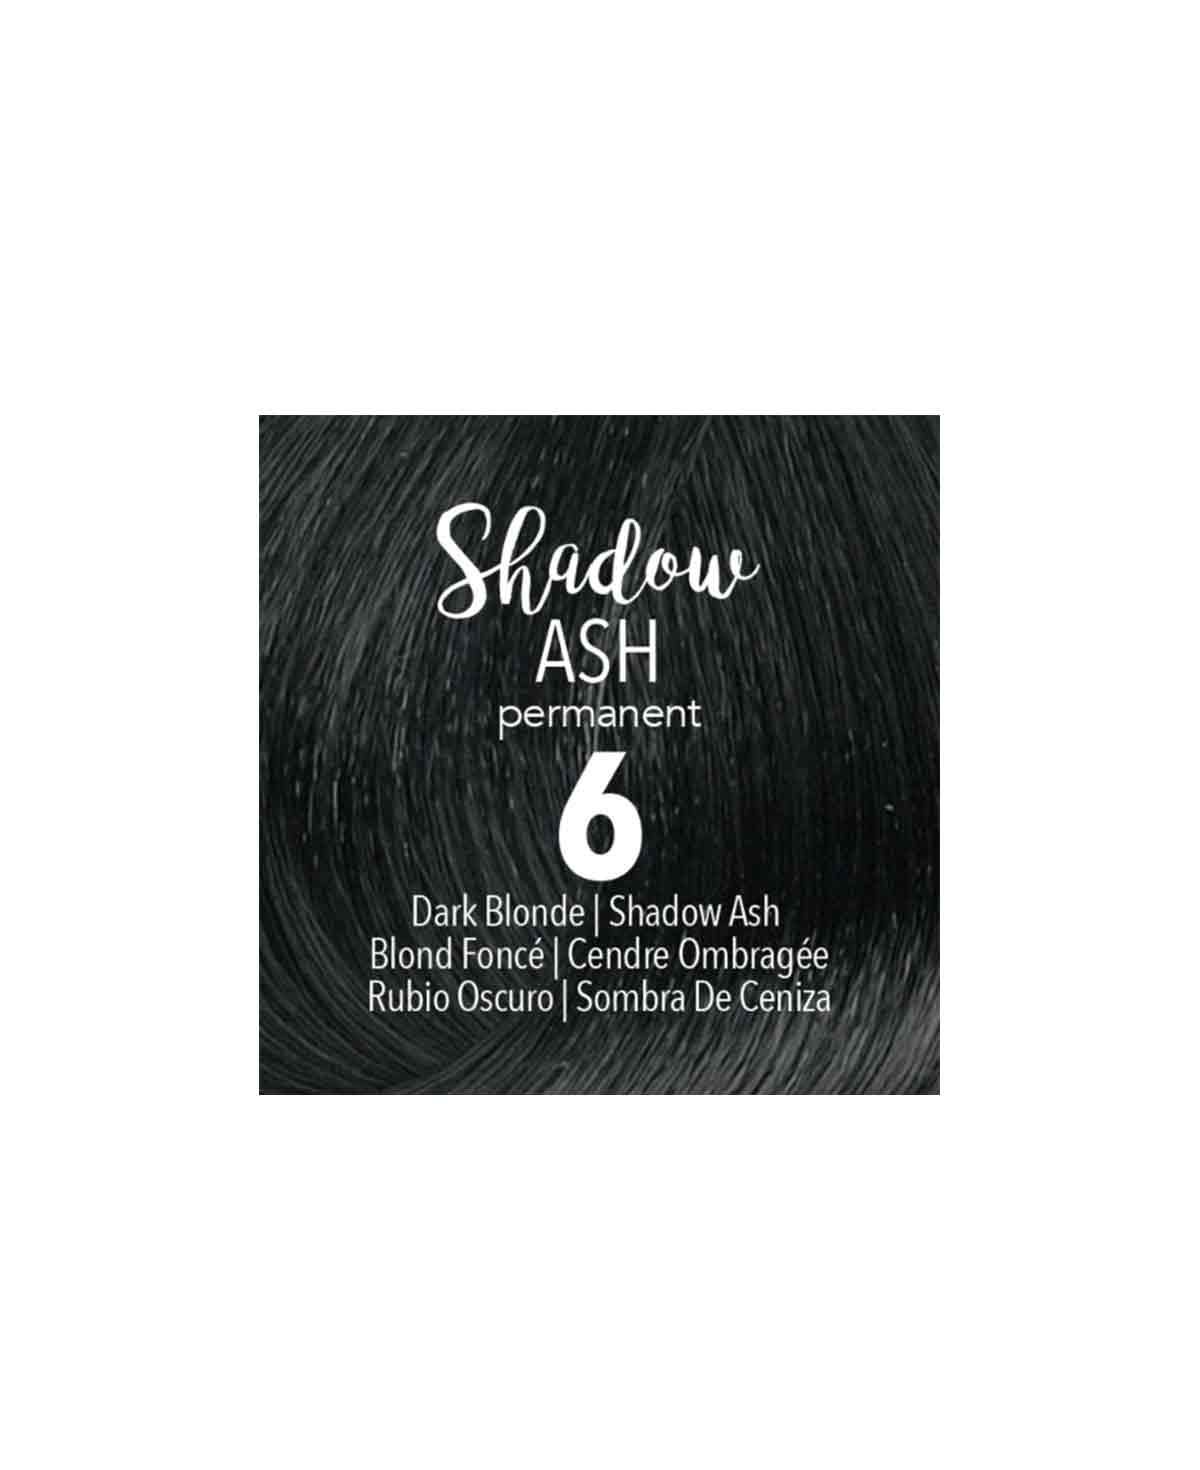 Mydentity - PERM. 6 Shadow Ash Dark Blonde